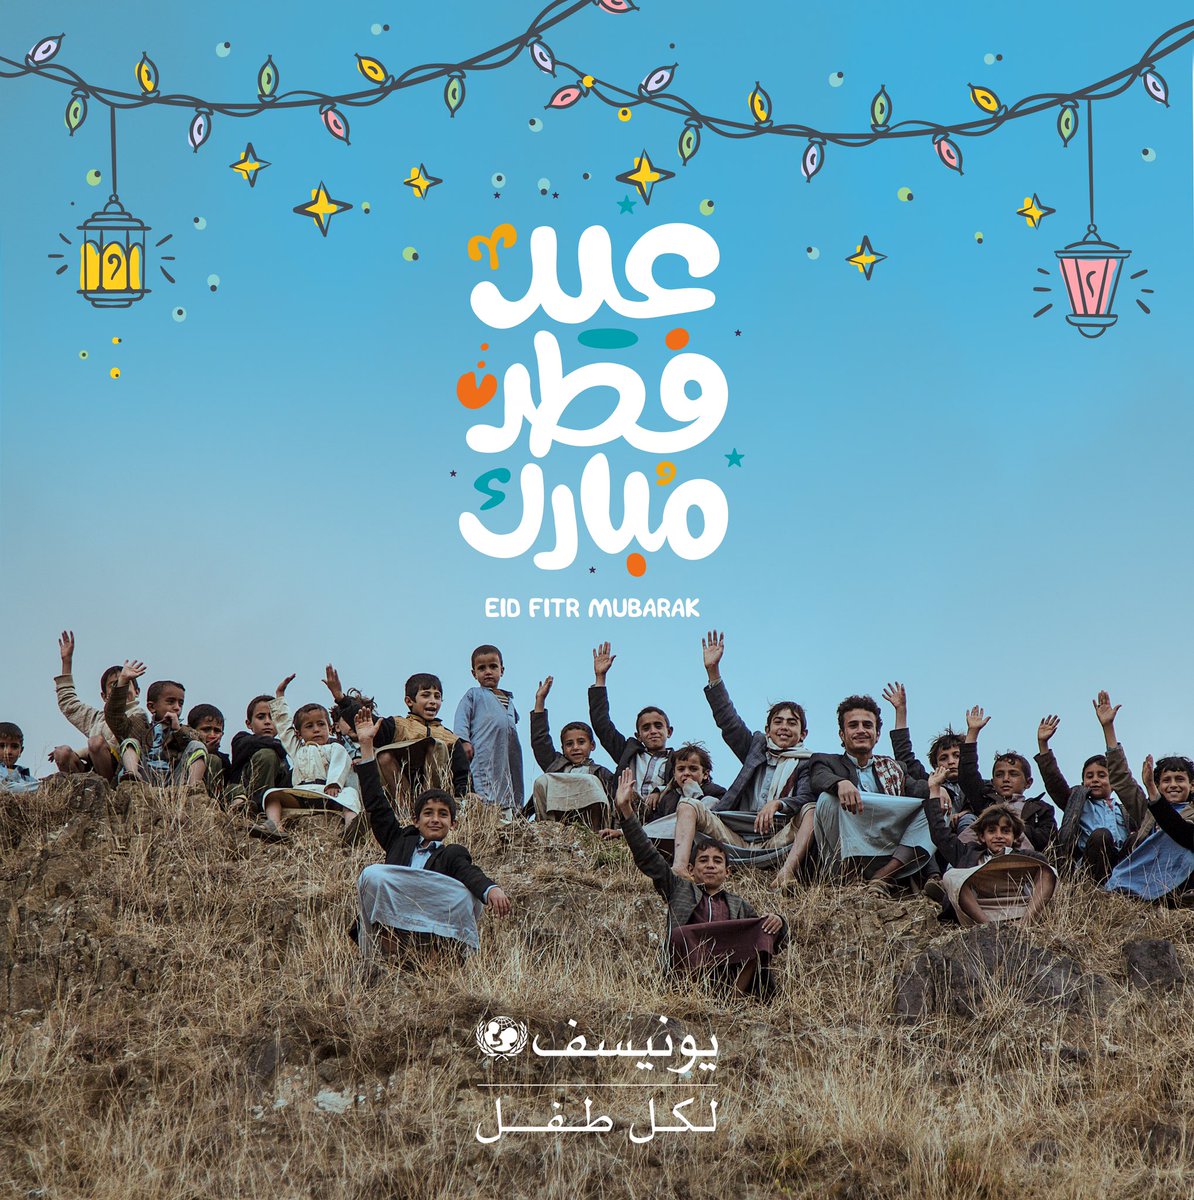 نتمنى لأطفال اليمن عيد مبارك! رغم التحديات، شجاعتكم تلهمنا. لنصنع مستقبلًا أكثر إشراقًا #لكل_طفل في اليمن. نتمنى للجميع عيد مبارك مليئ بالبهجة!